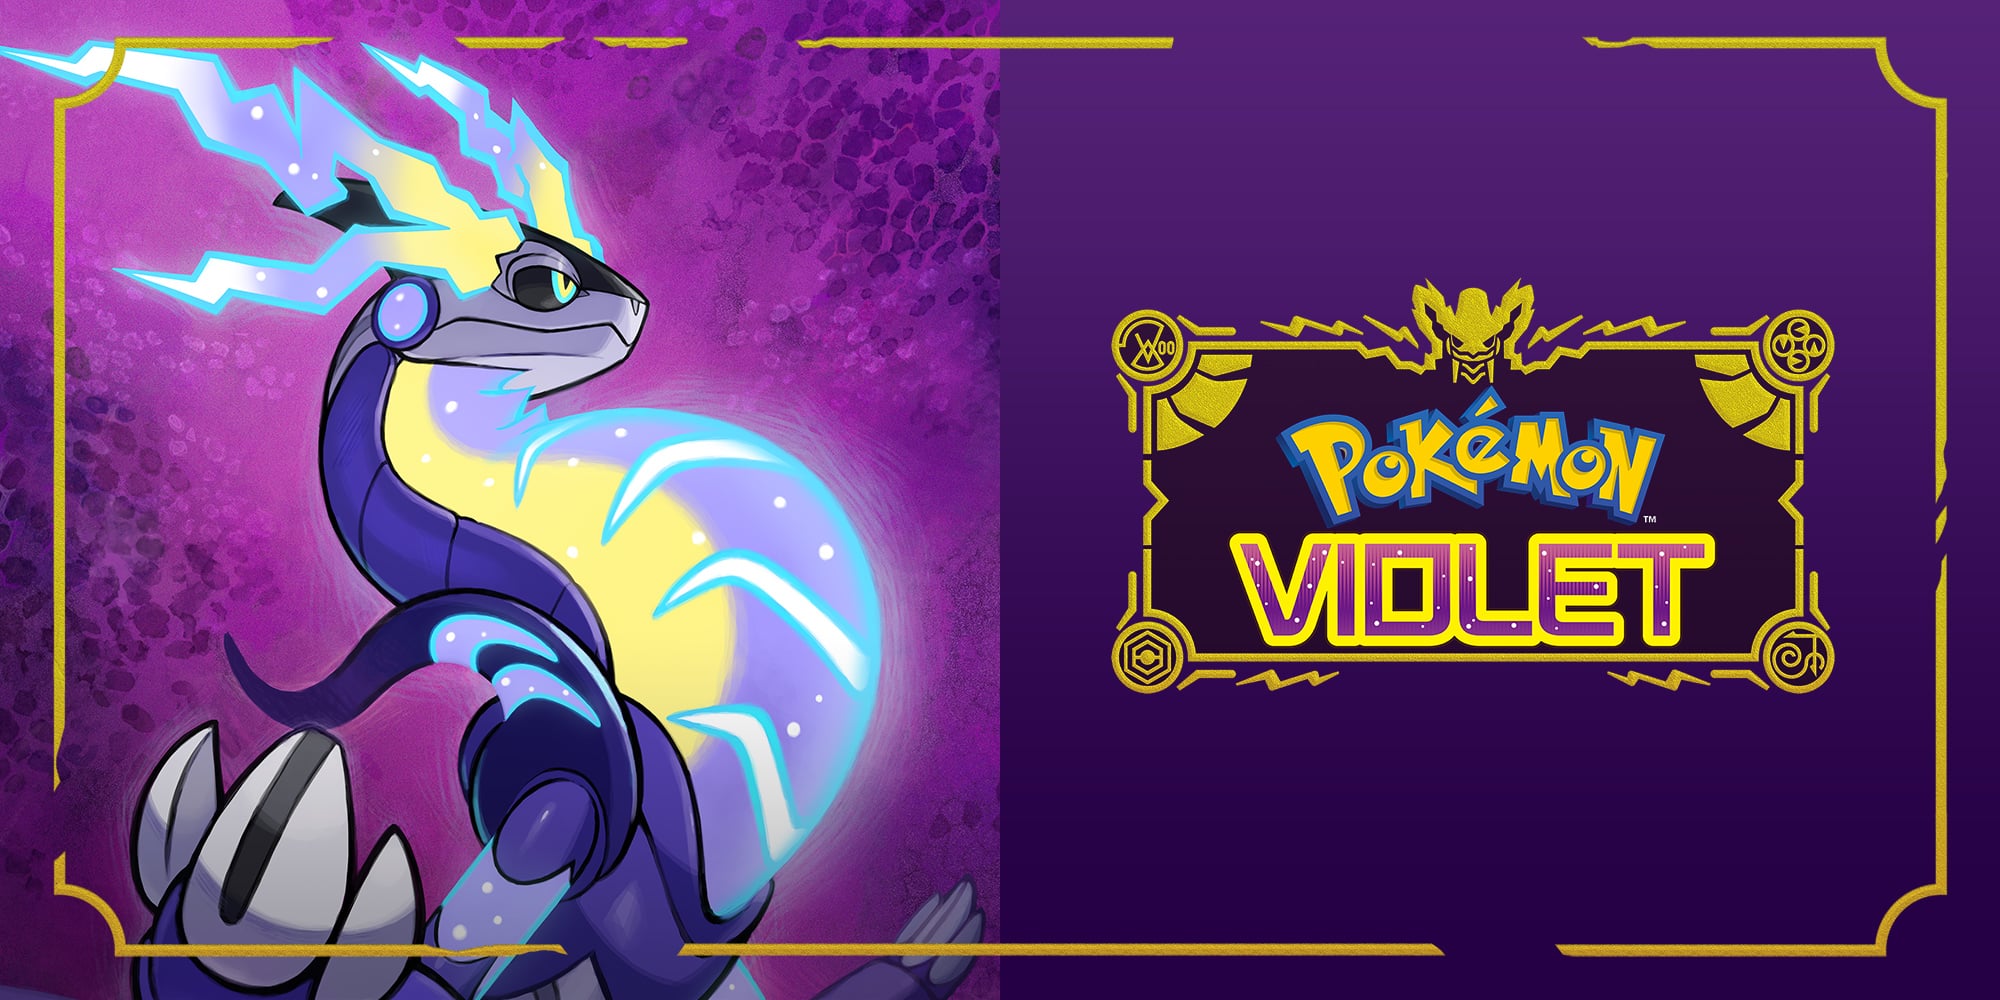 Pokémon Violet Review